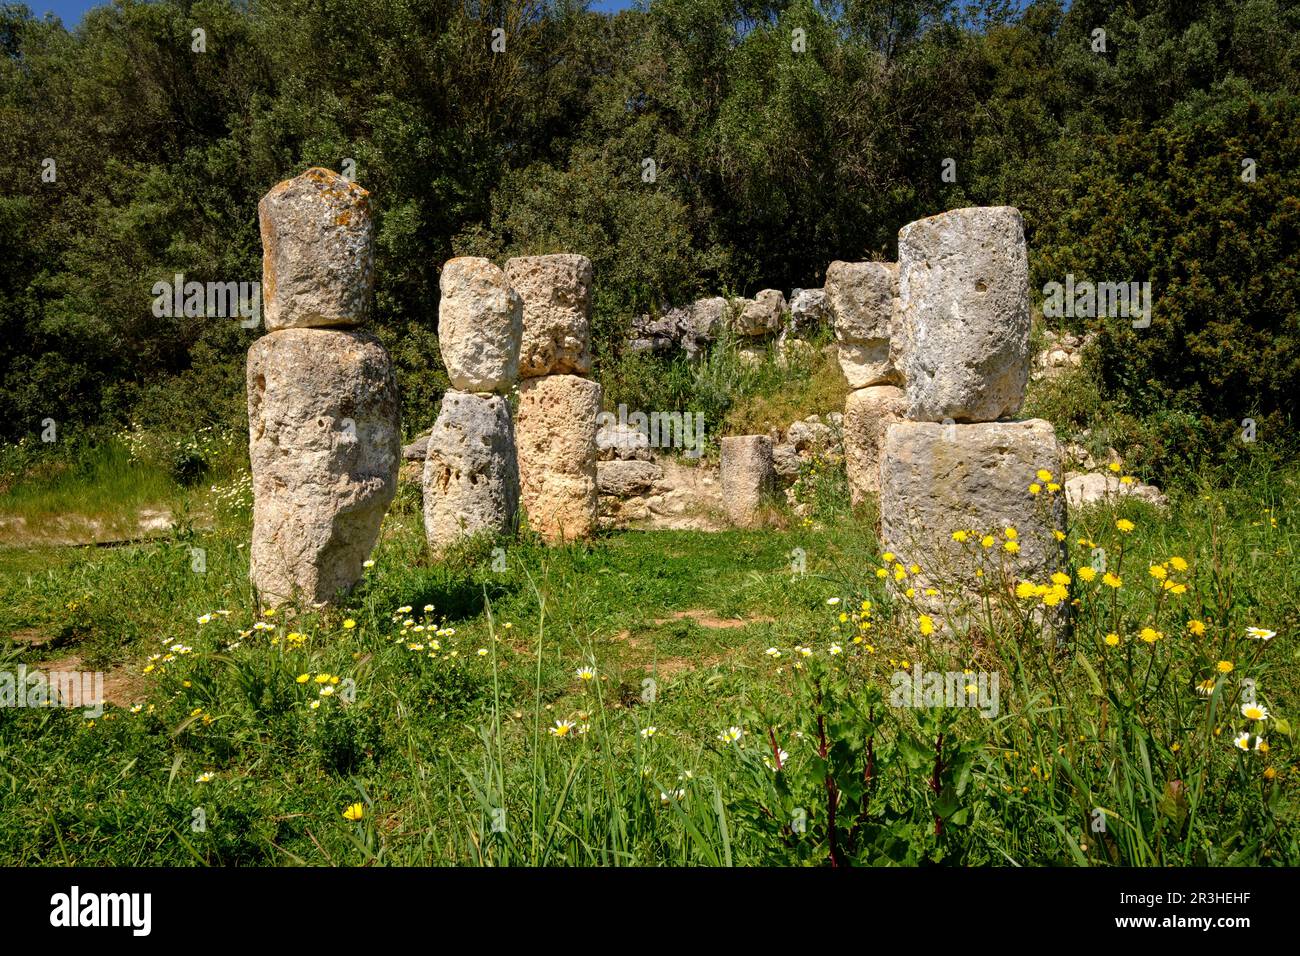 Son Corró , yacimiento arqueológico, datado en la época postalayótica (s.V-II A.c), Costitx, isla de Mallorca, balearic islands, spain. Stock Photo